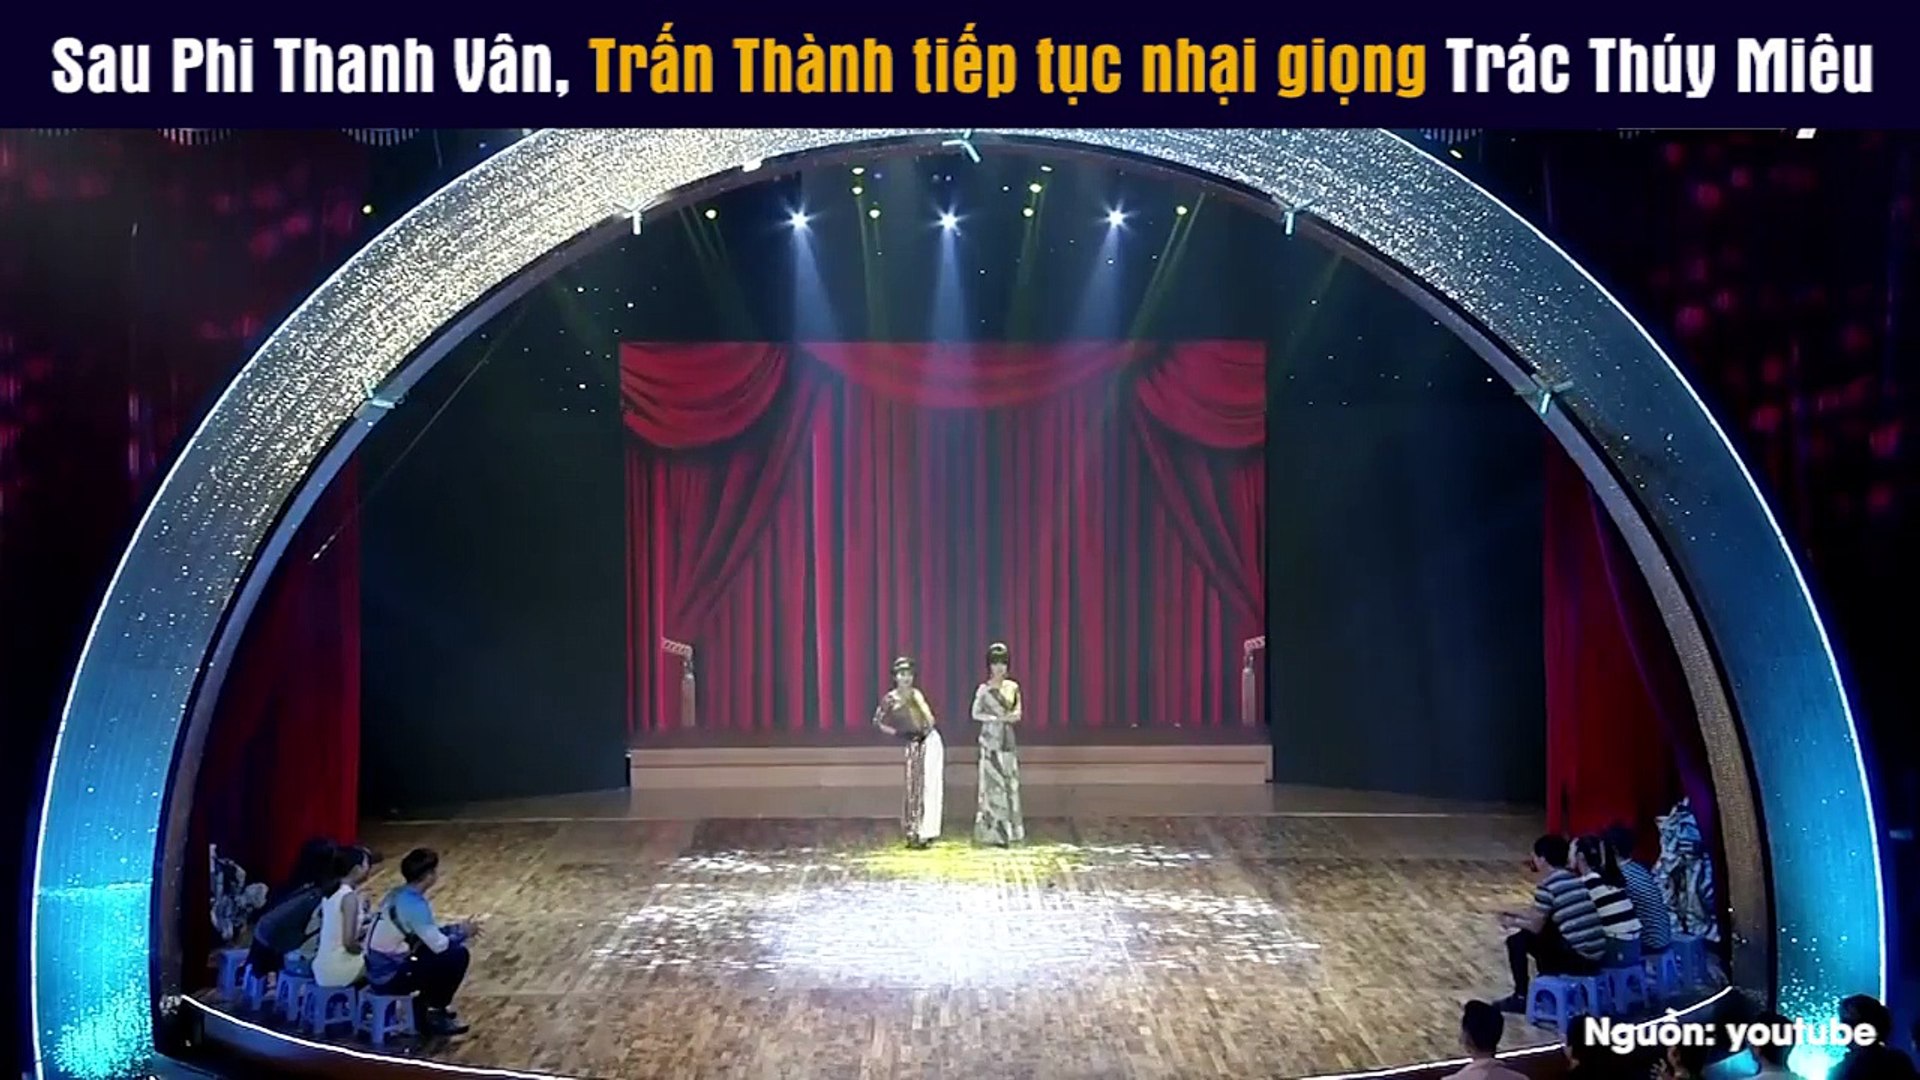 ⁣Sau Phi Thanh Vân, Trấn Thành tiếp tục nhại giọng Trác Thúy Miêu